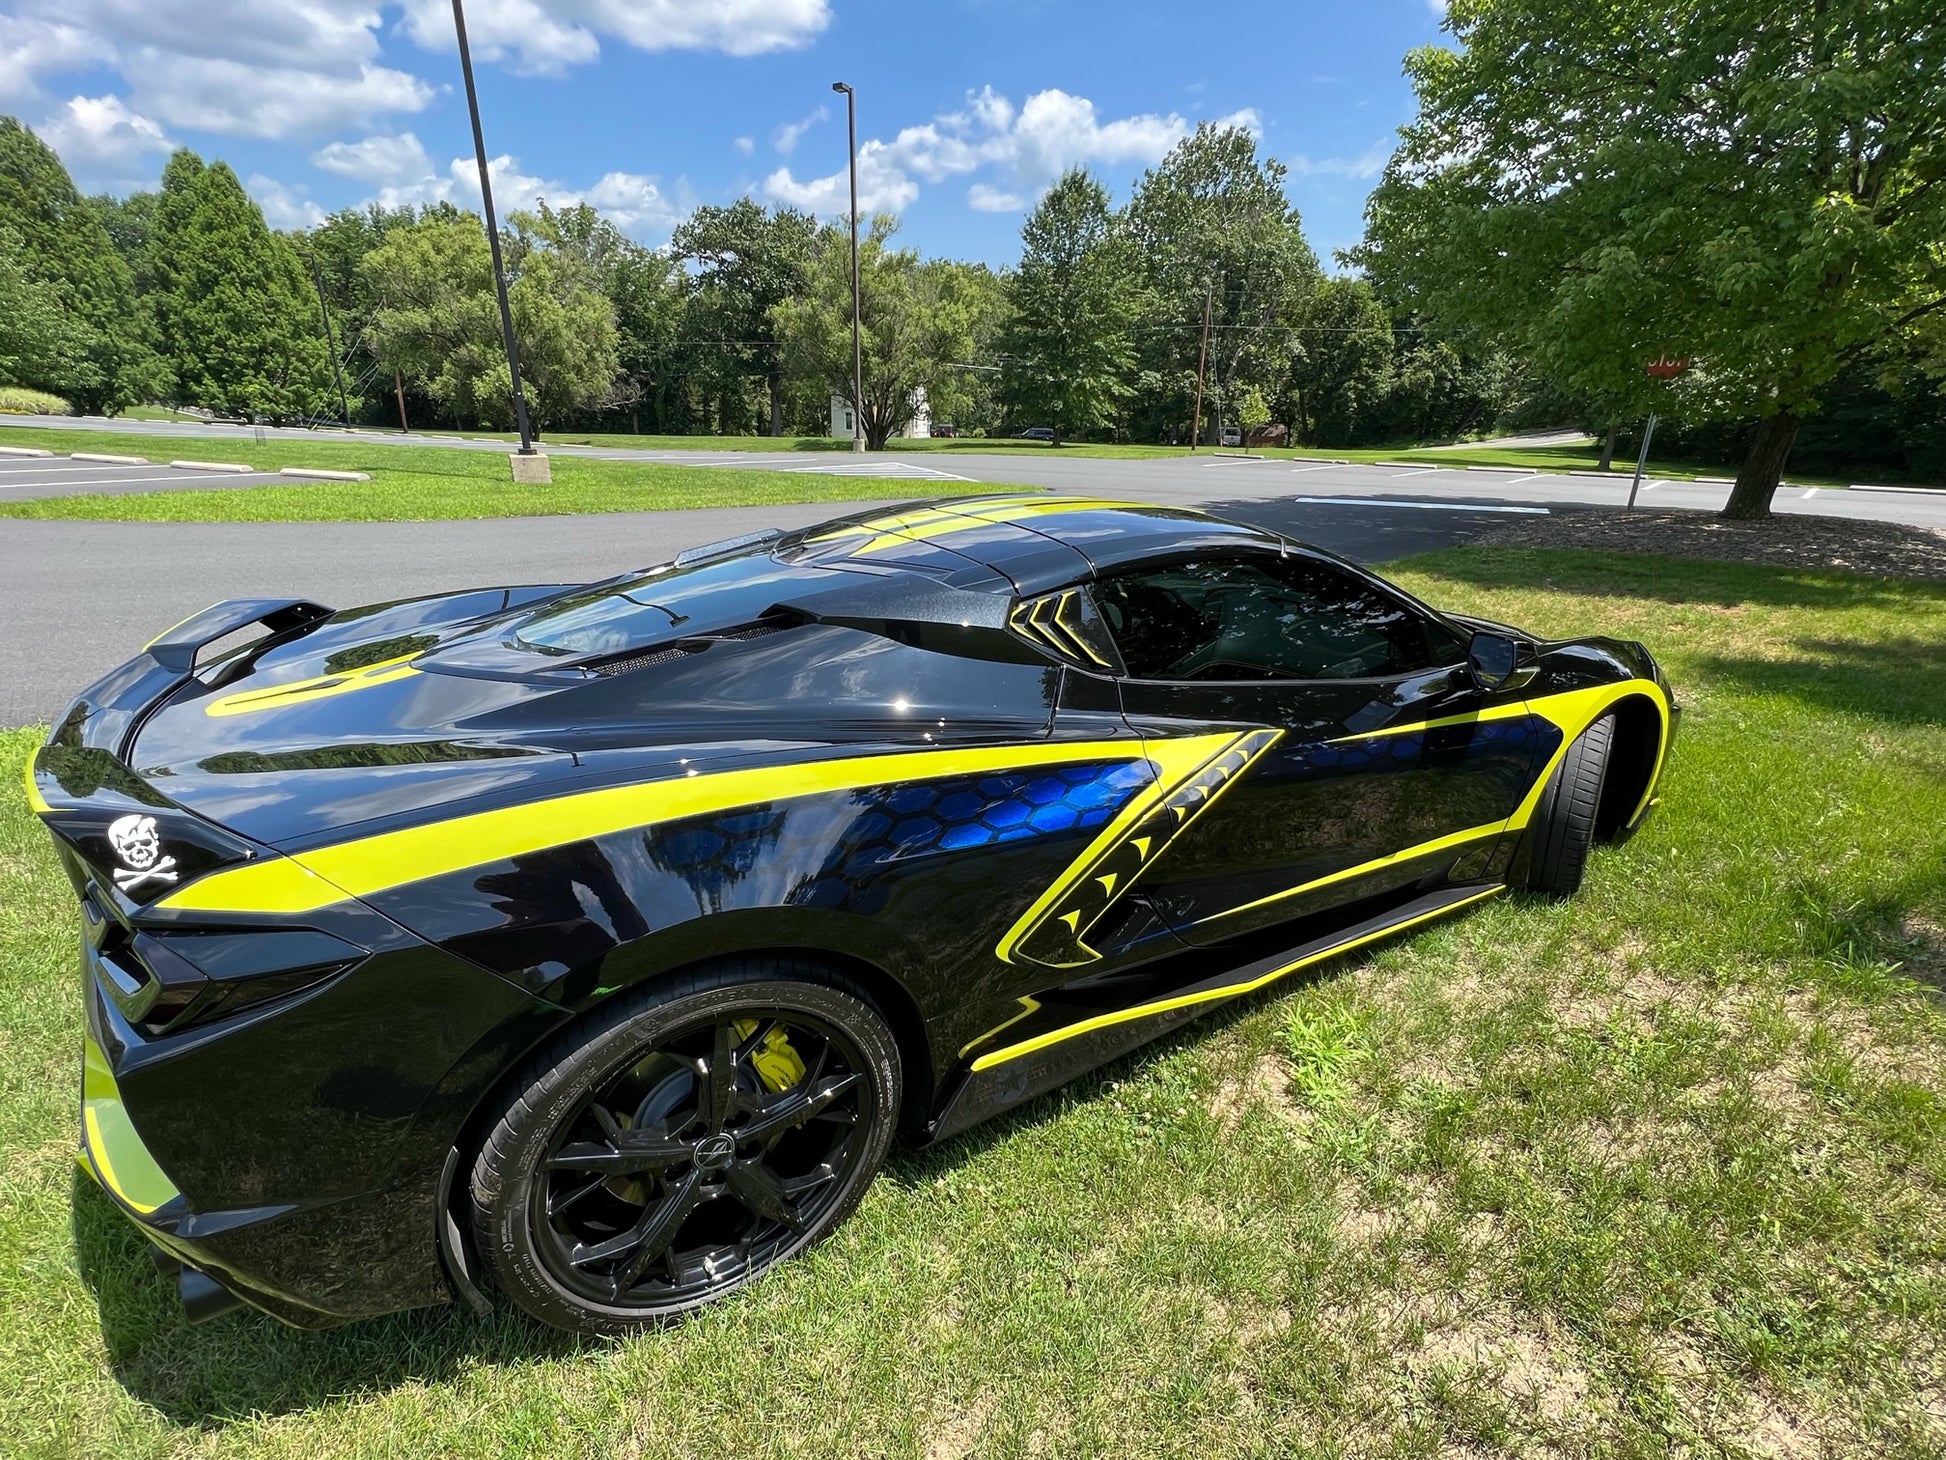 Felixs 2020 Corvette Stingray 1LT in gloss-black